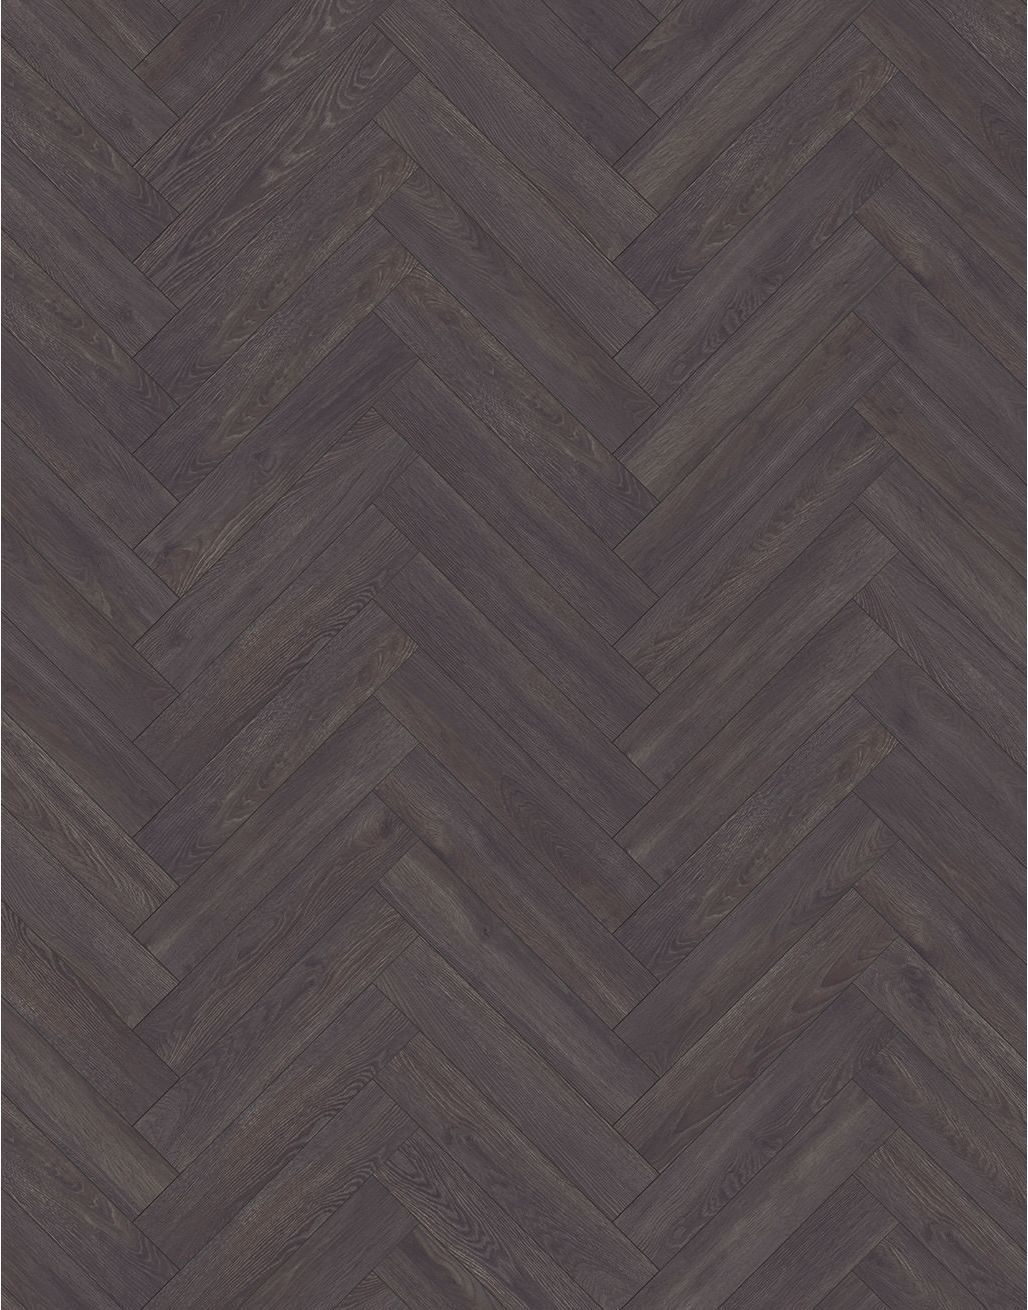 Herringbone - Vintage Oak | Direct Wood Flooring